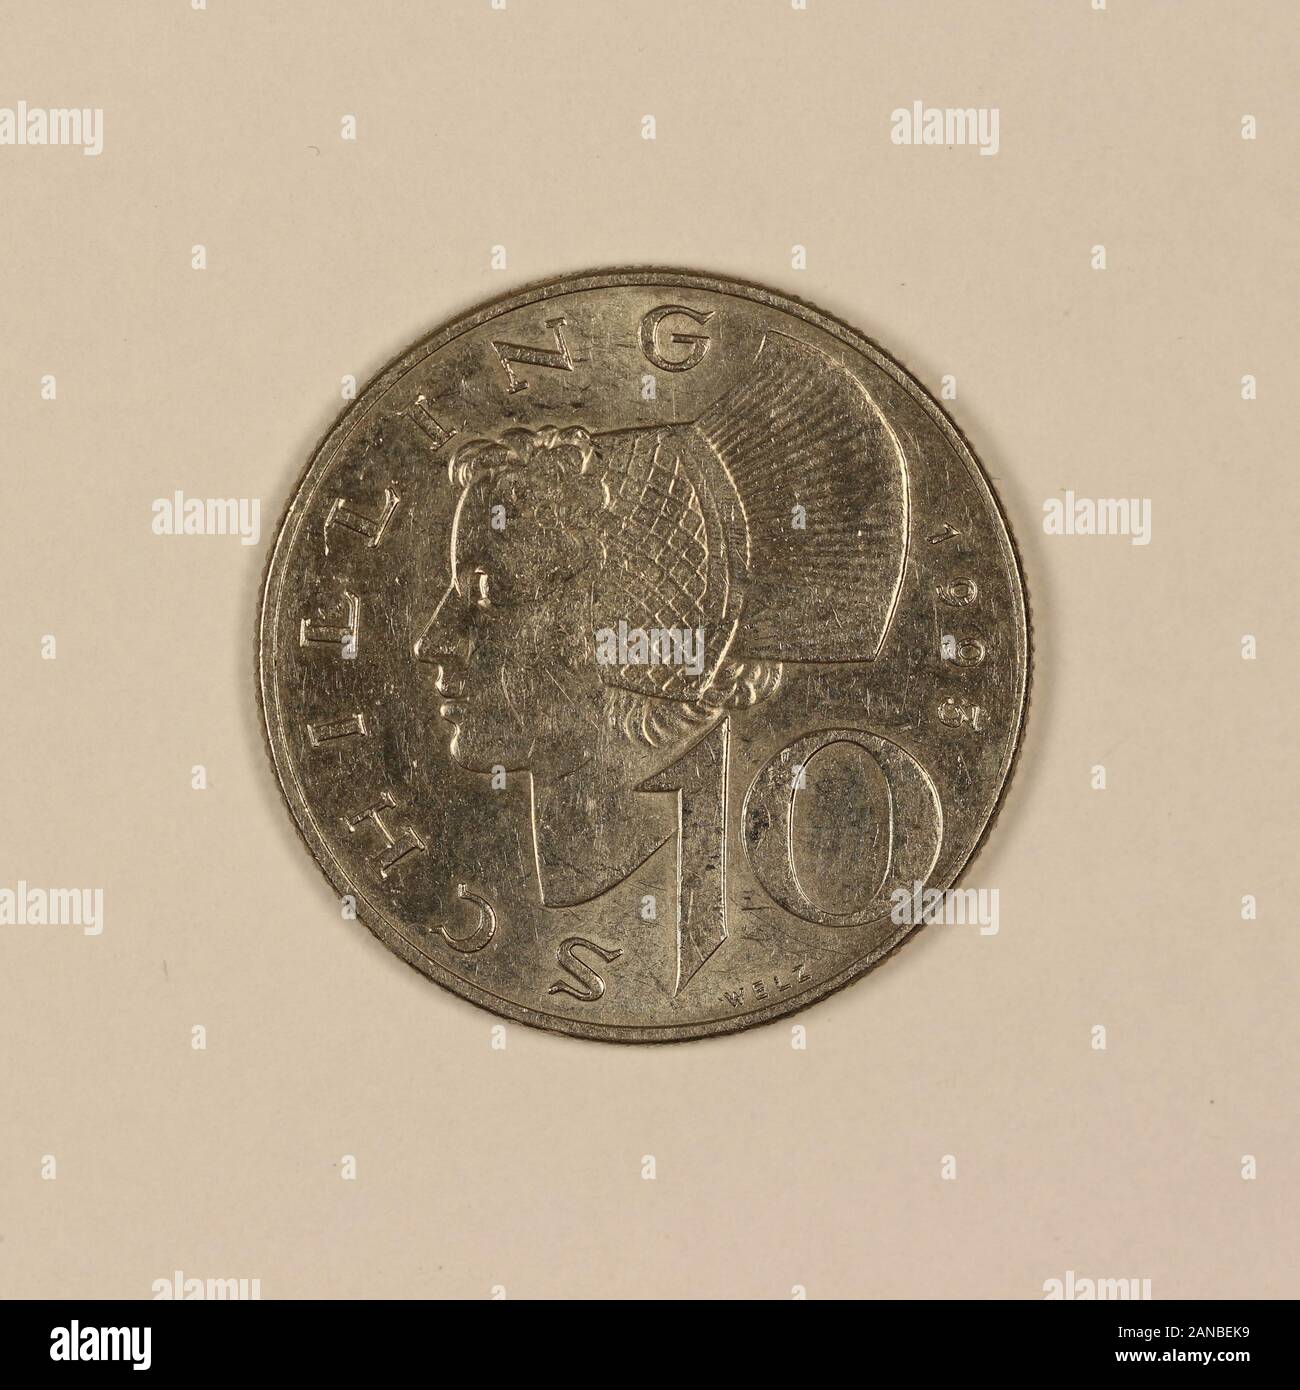 Vorderseite einer ehemaligen Österreichischen 10 Schilling Münze Foto Stock